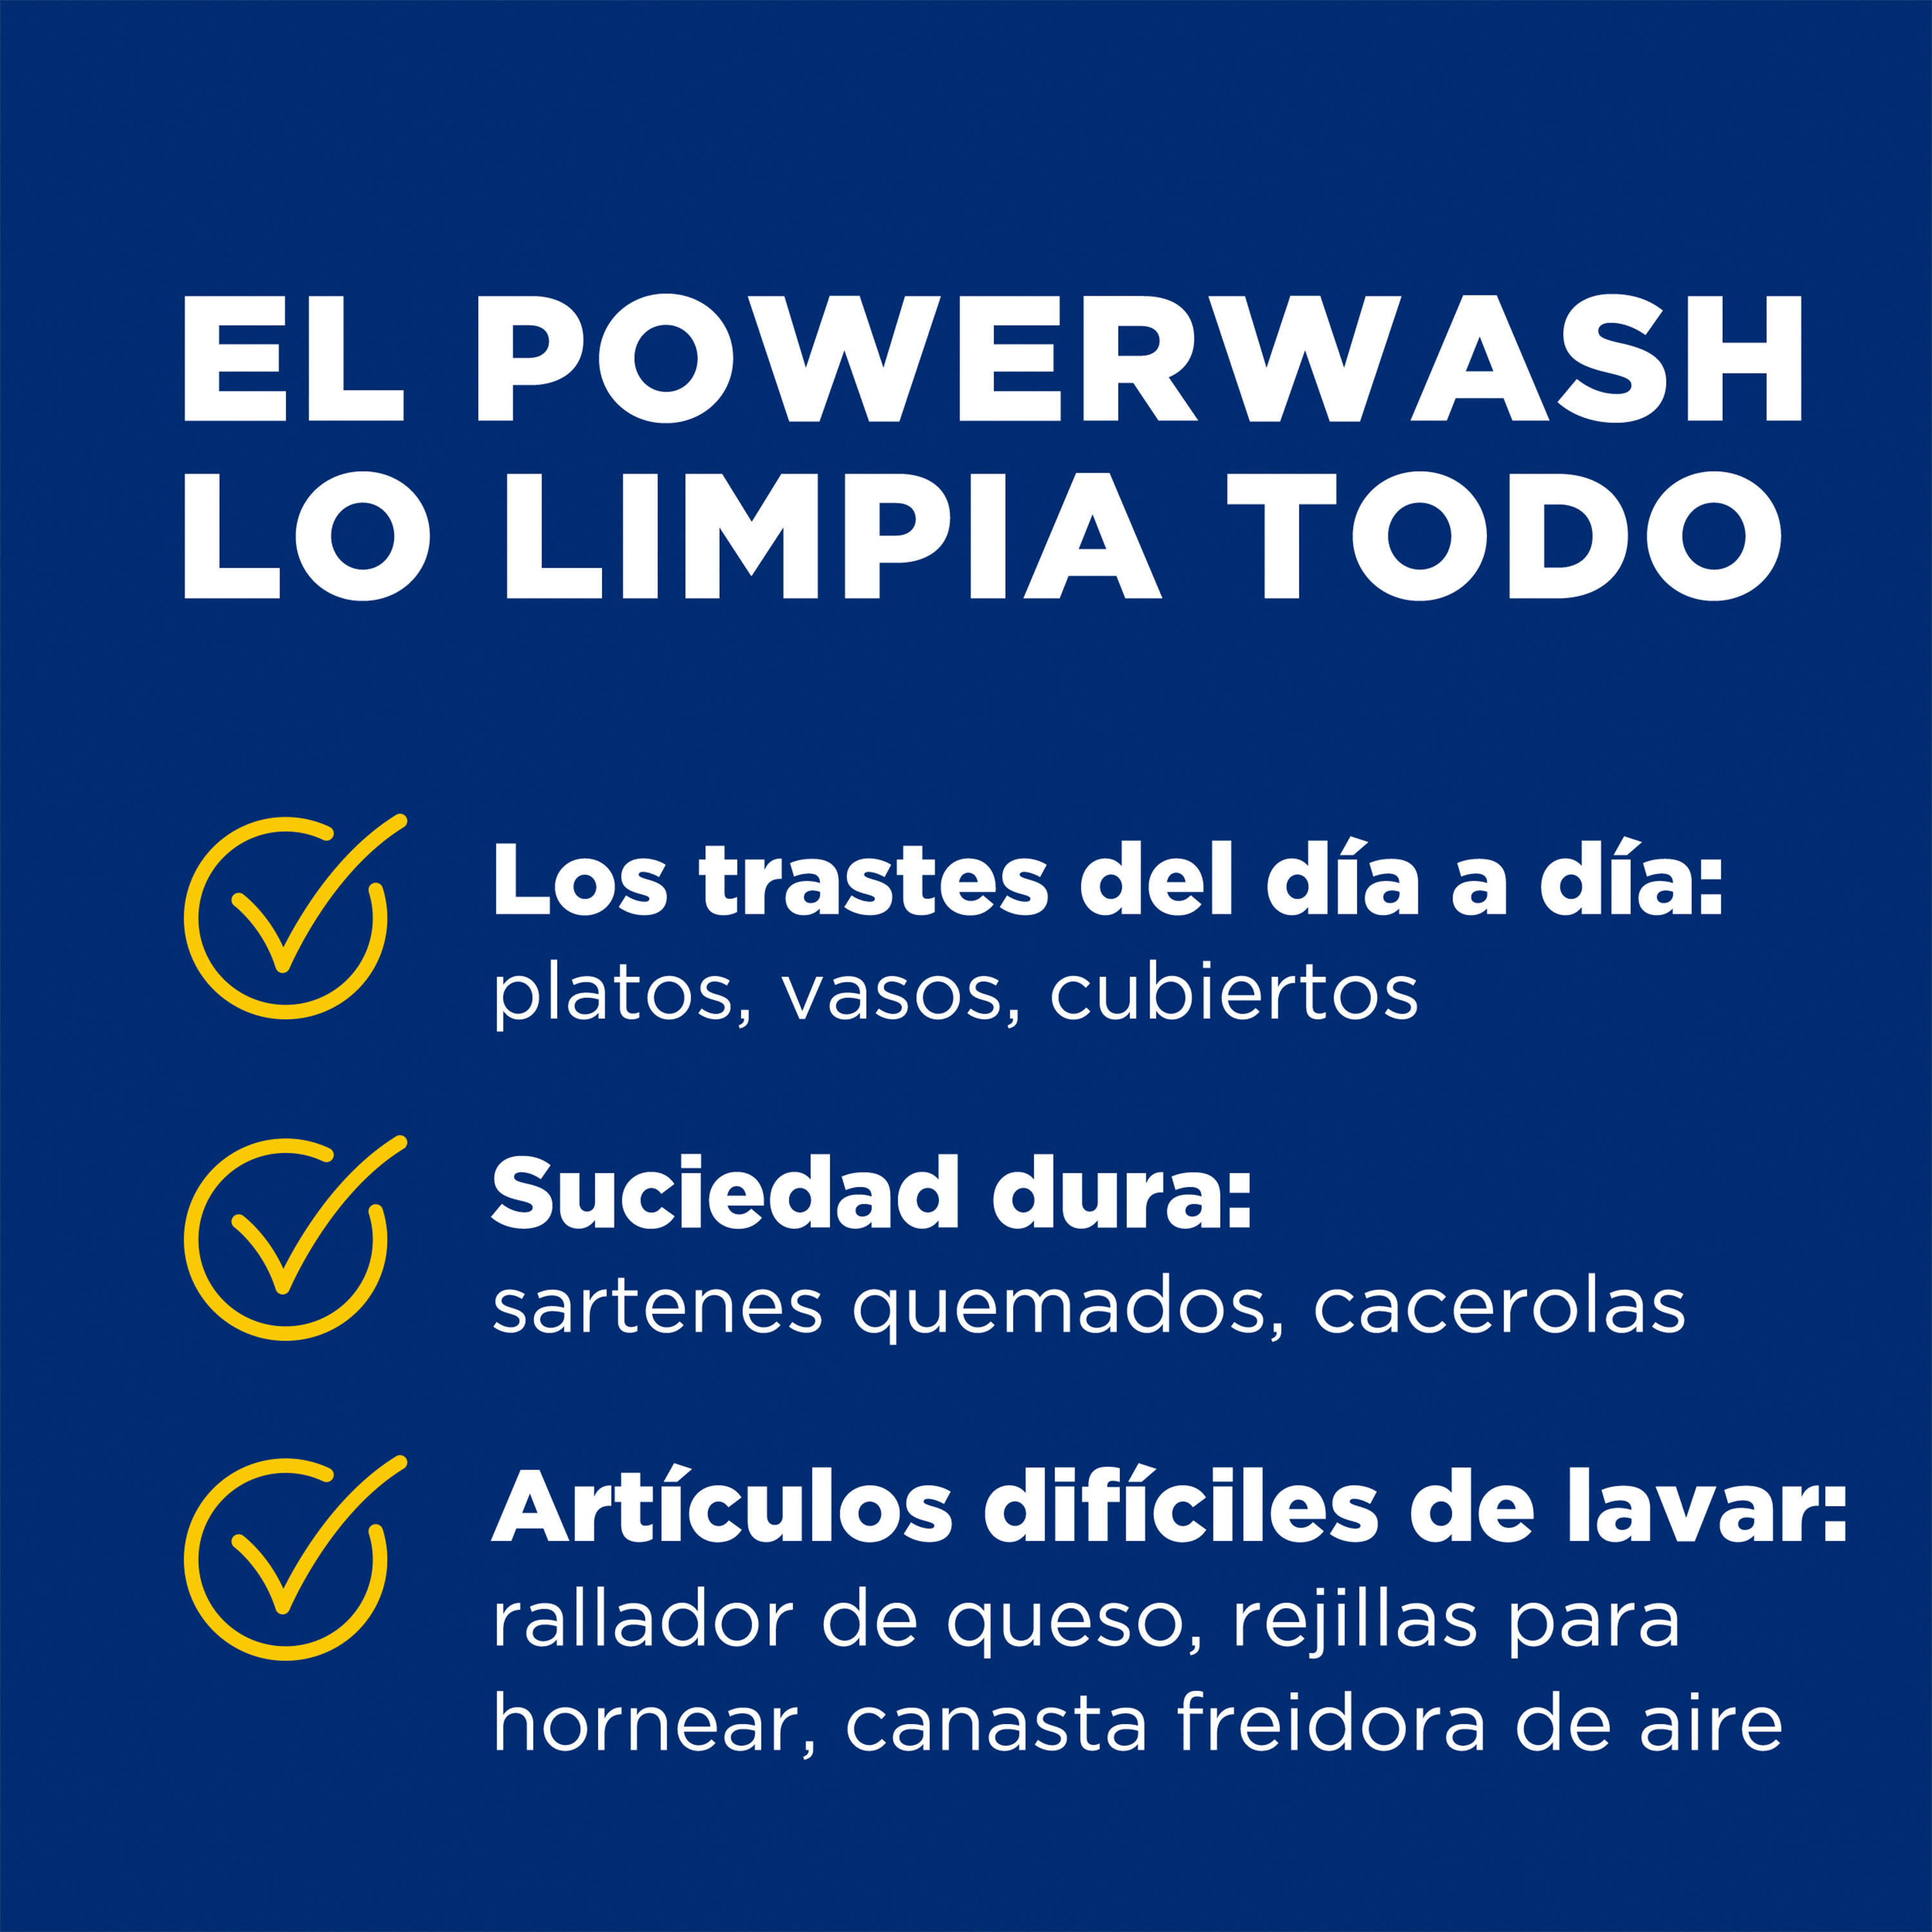 EL POWERWASH LO LIMPIA TODO